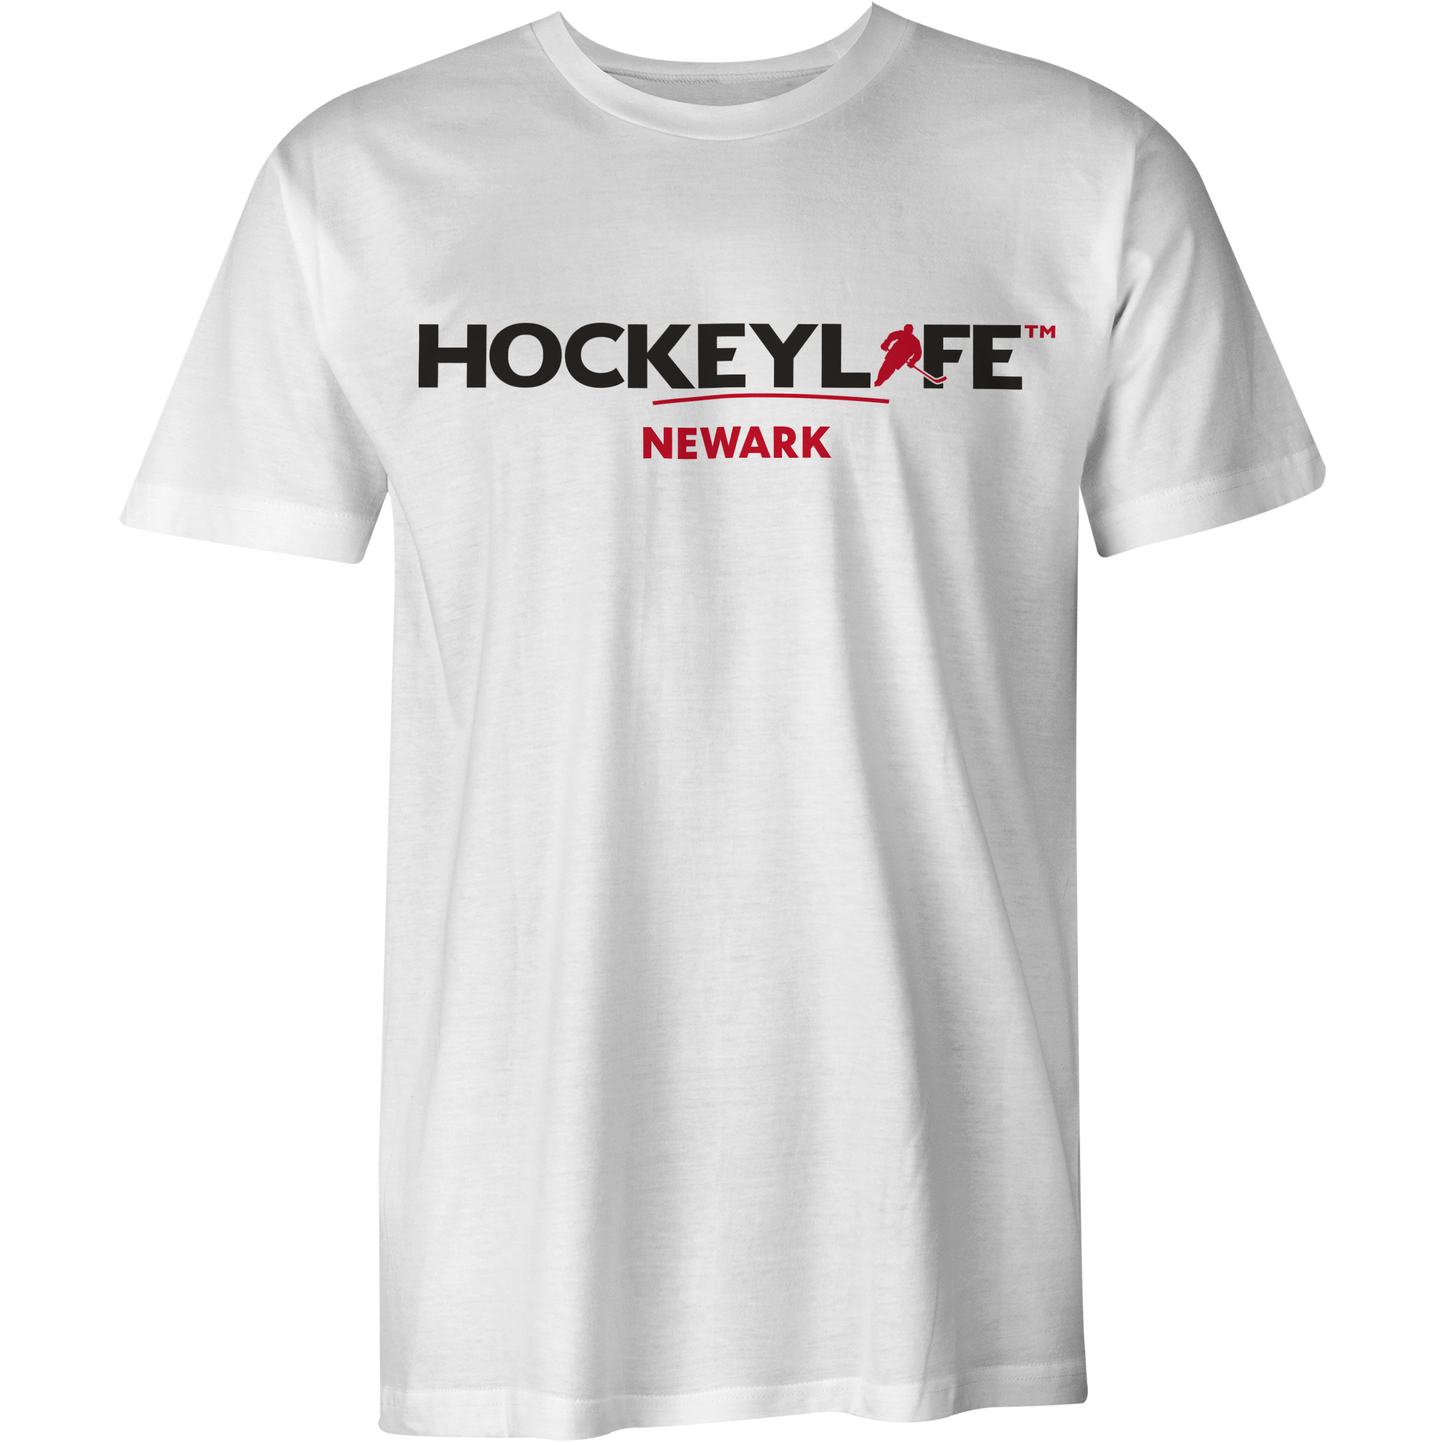 HockeyLife Newark Tee Shirt